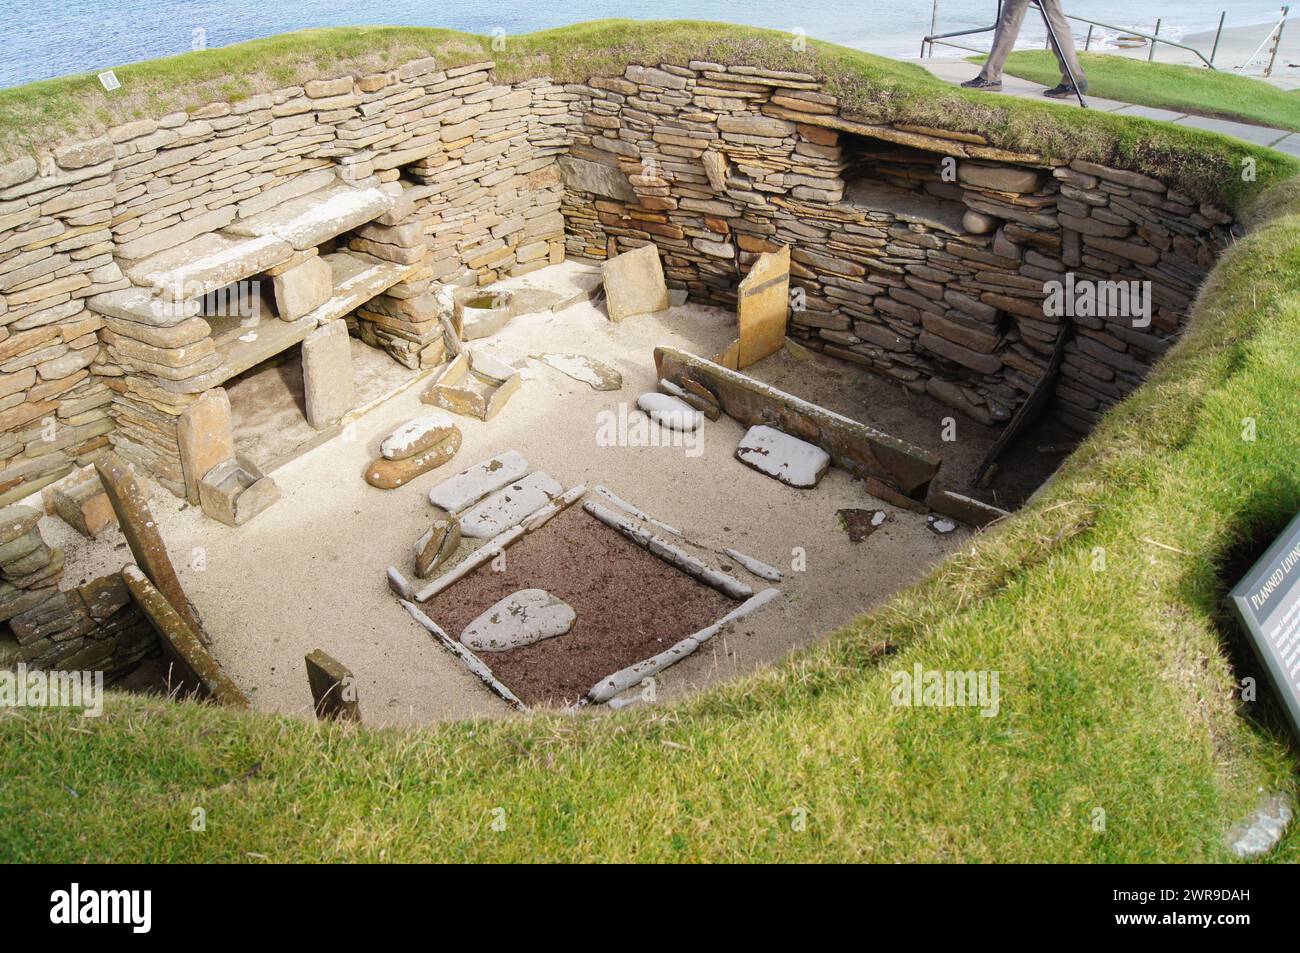 Vieille de 5000 ans, Skara Brae, colonie néolithique construite en pierre, située dans la baie de Skaill, Orcades, Écosse Banque D'Images